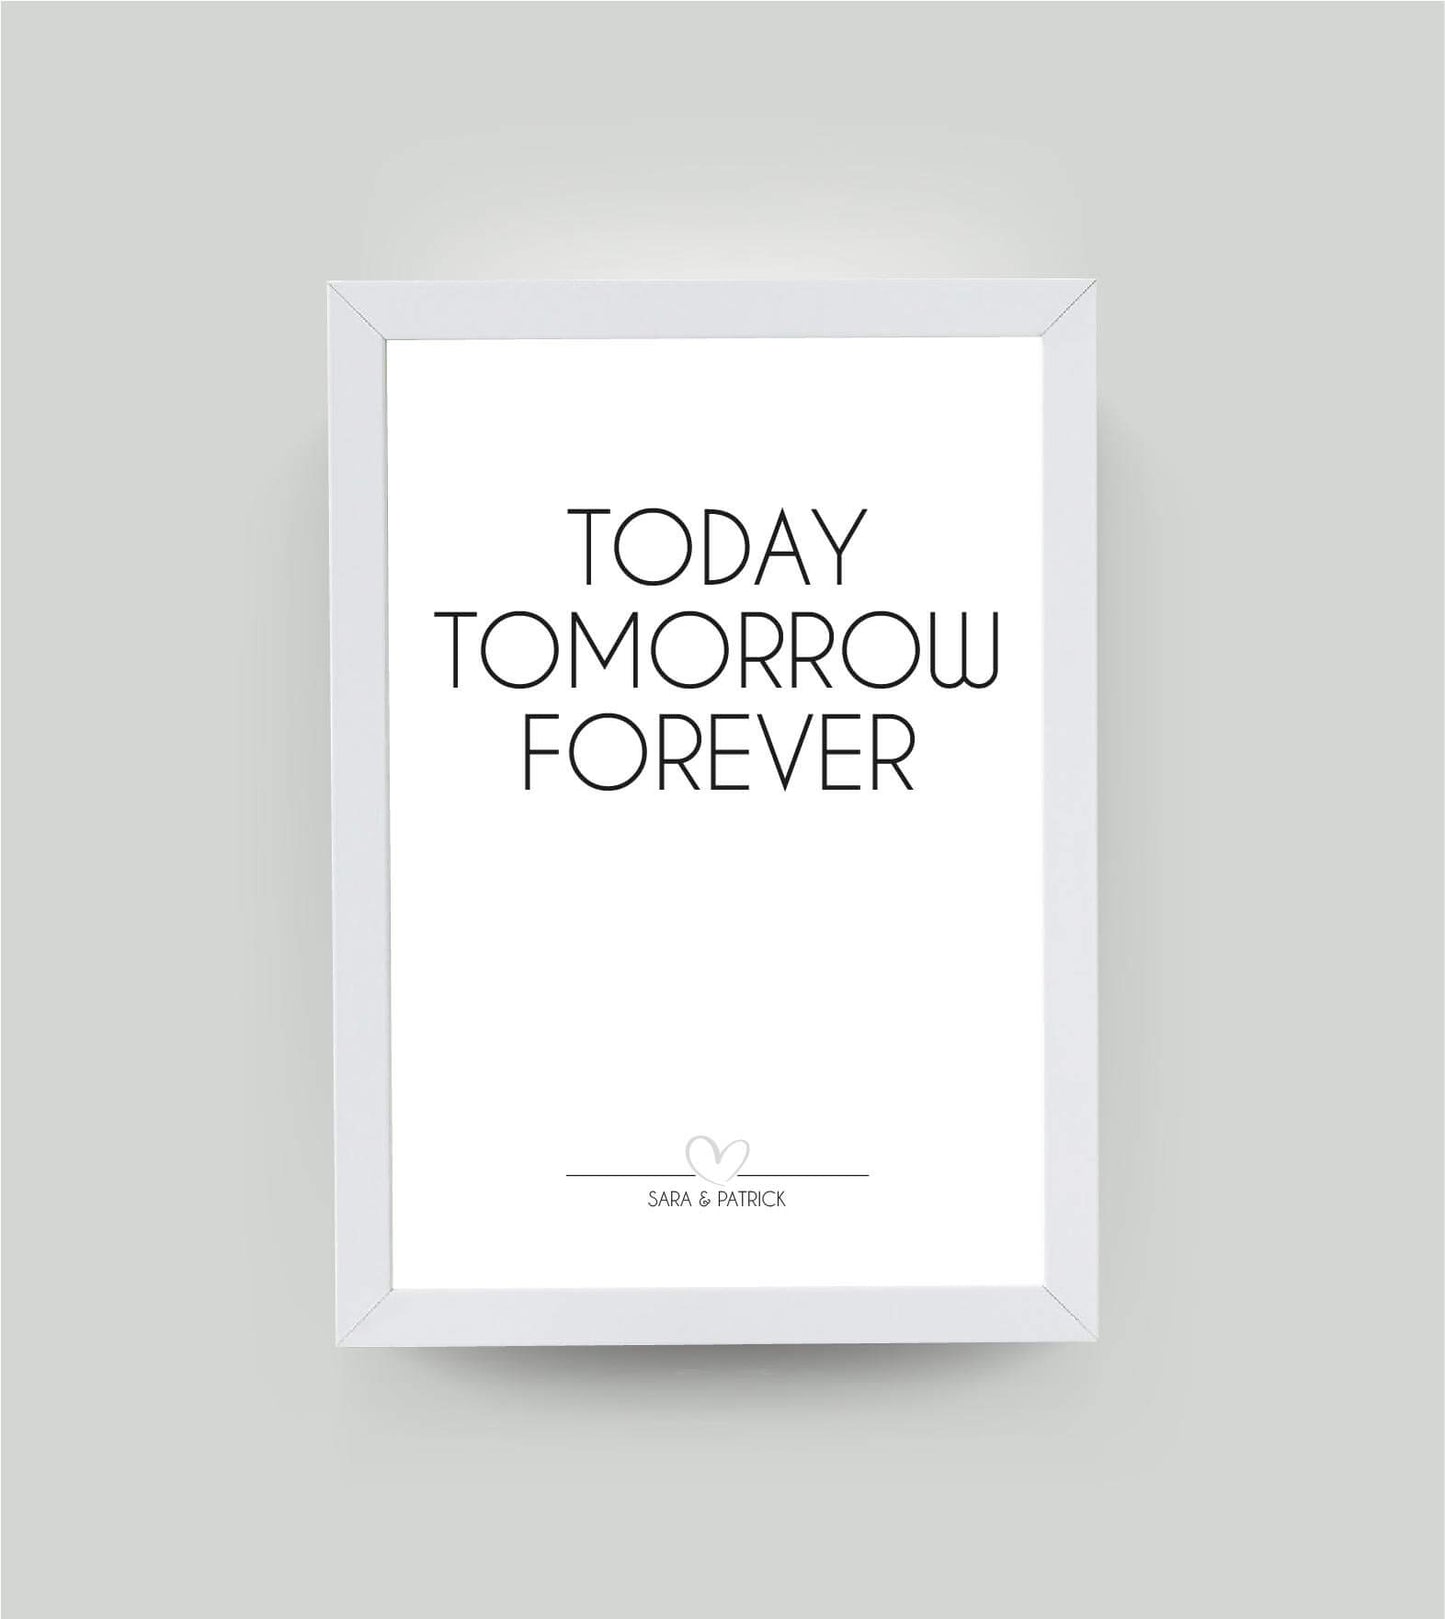 Personalisiertes Bild "Today Tomorrow forever", Bildfarbe: Weiß, Bildgröße: 13x18cm, DIN A4, DIN A3, Bilderrahmen: Bilderrahmen weiß ohne Passepartout, Copyright:321geschenke.de